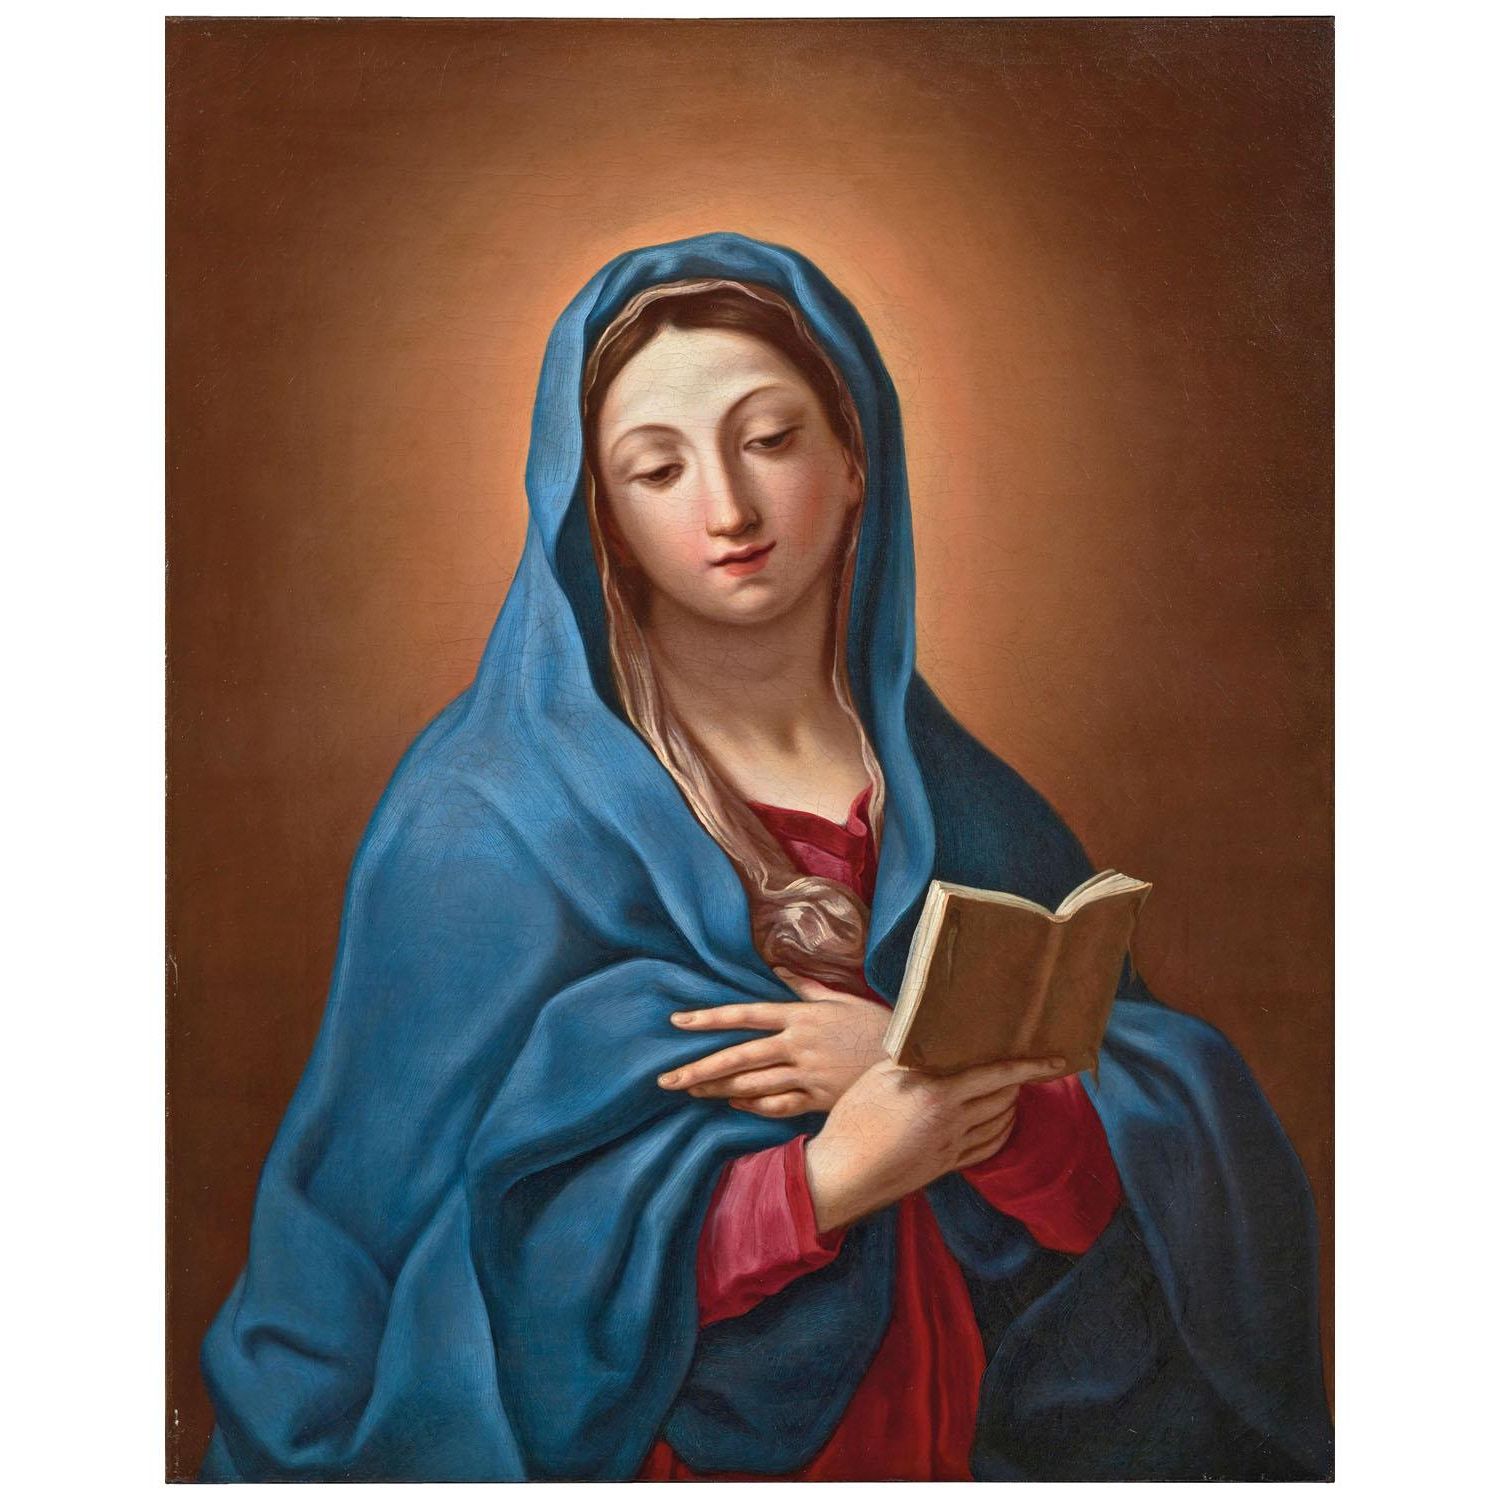 Elisabetta Sirani. Madonna legge. 1660-1665. Private collection